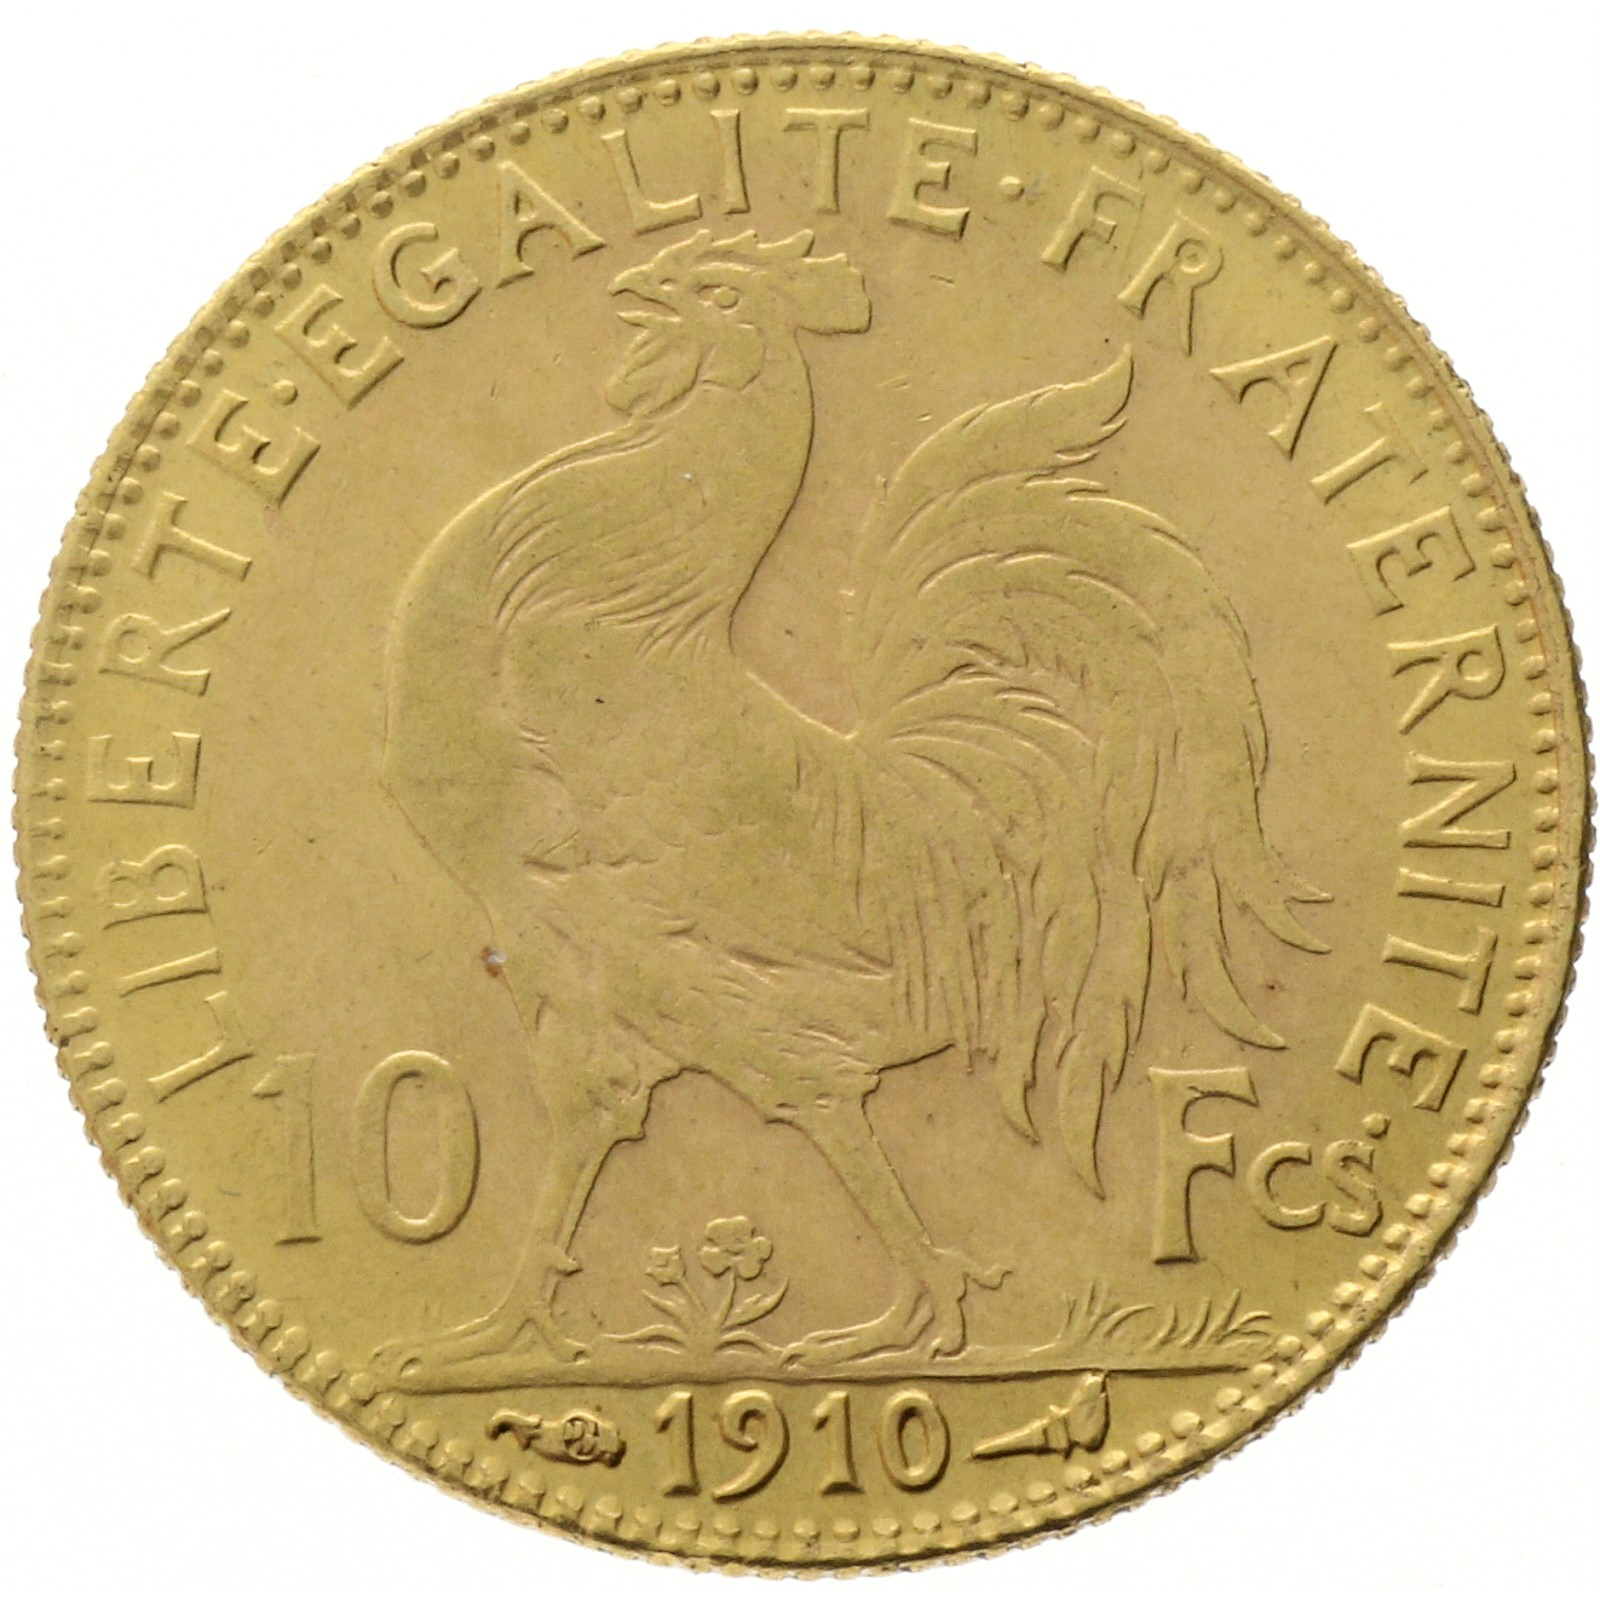 France - 10 francs - 1910 